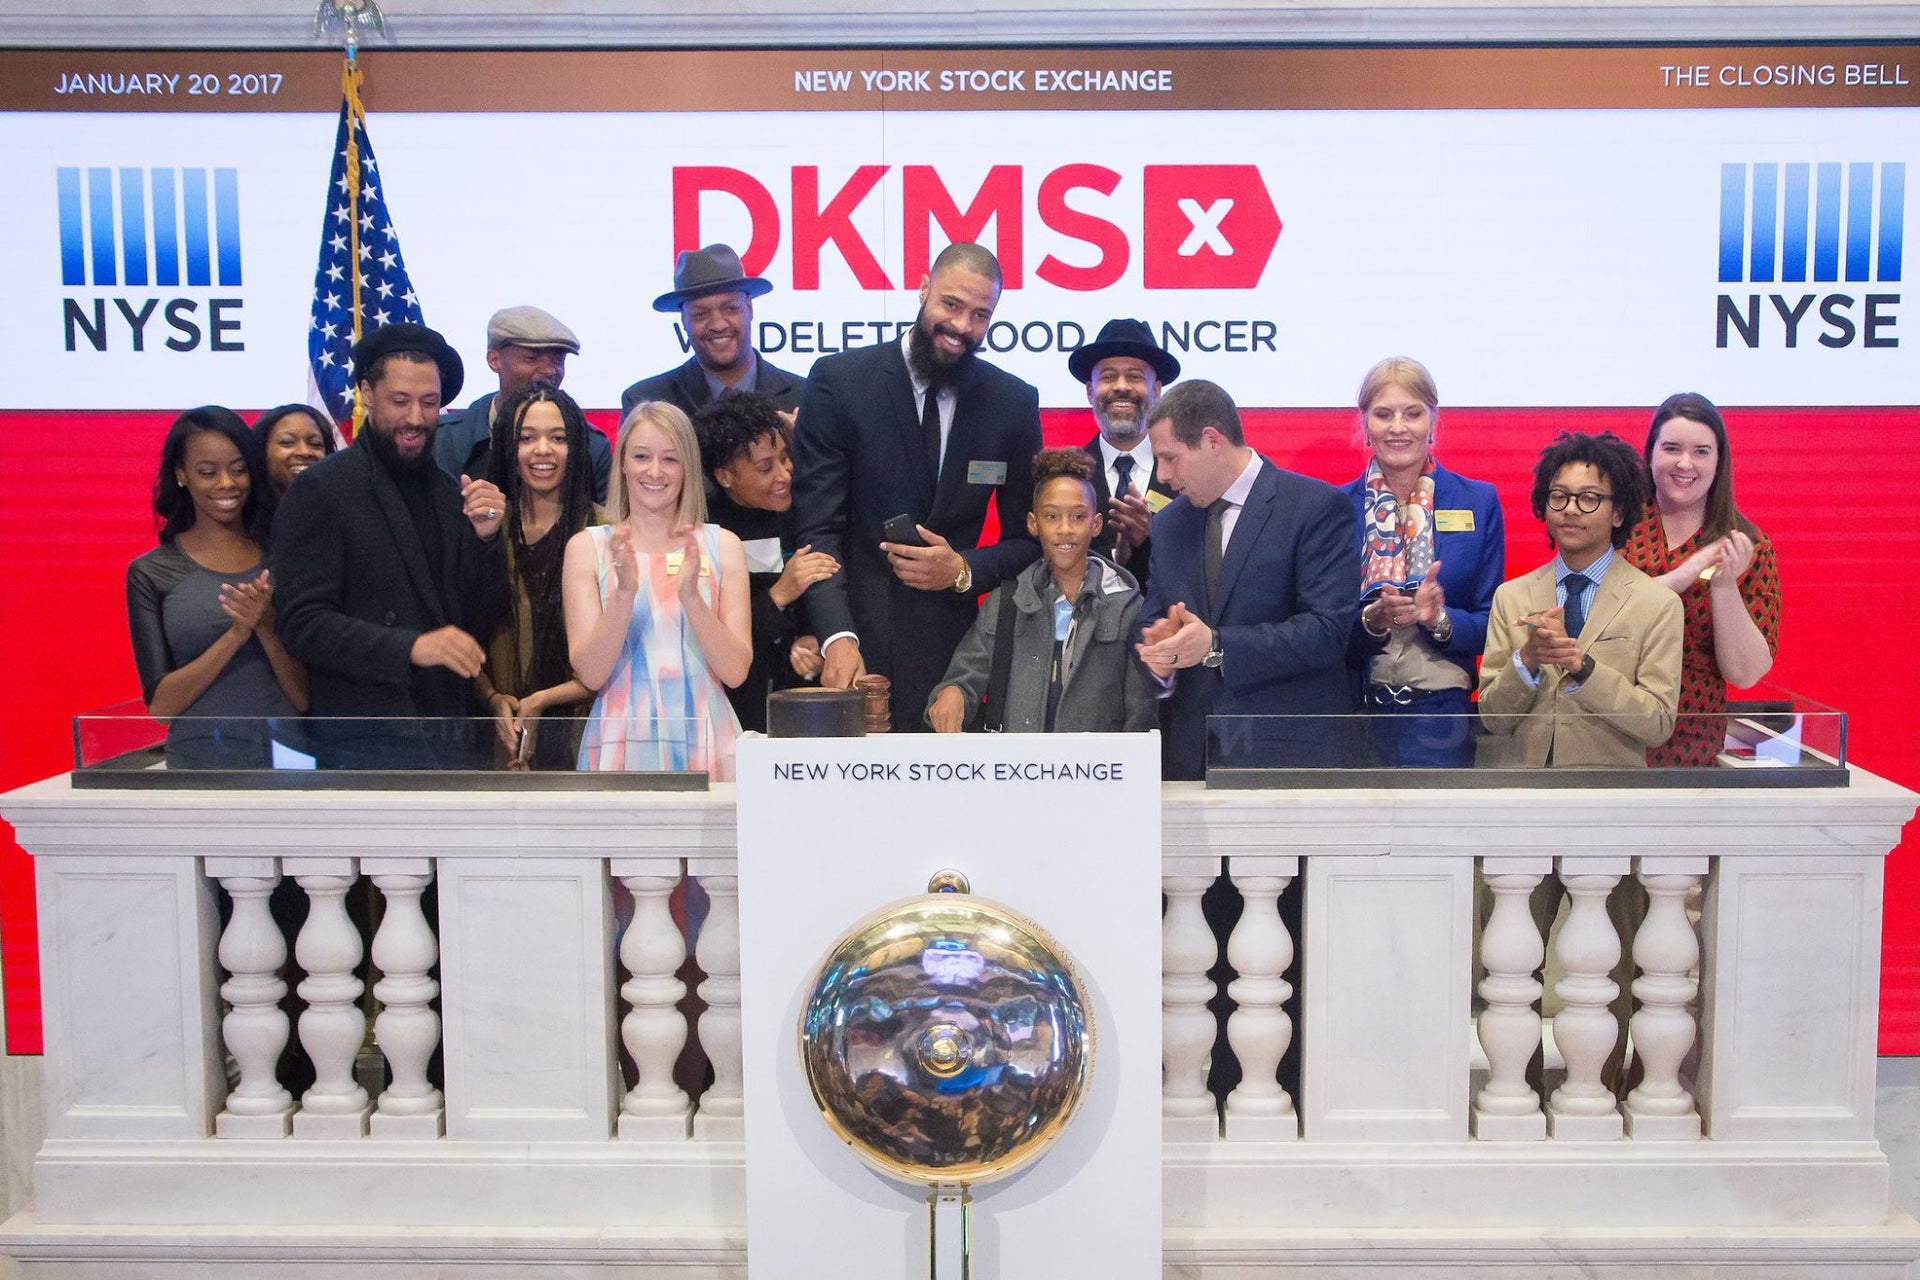 NBA-Profi Tyson Chandler läutet die Glocke an der Wall Street für die DKMS